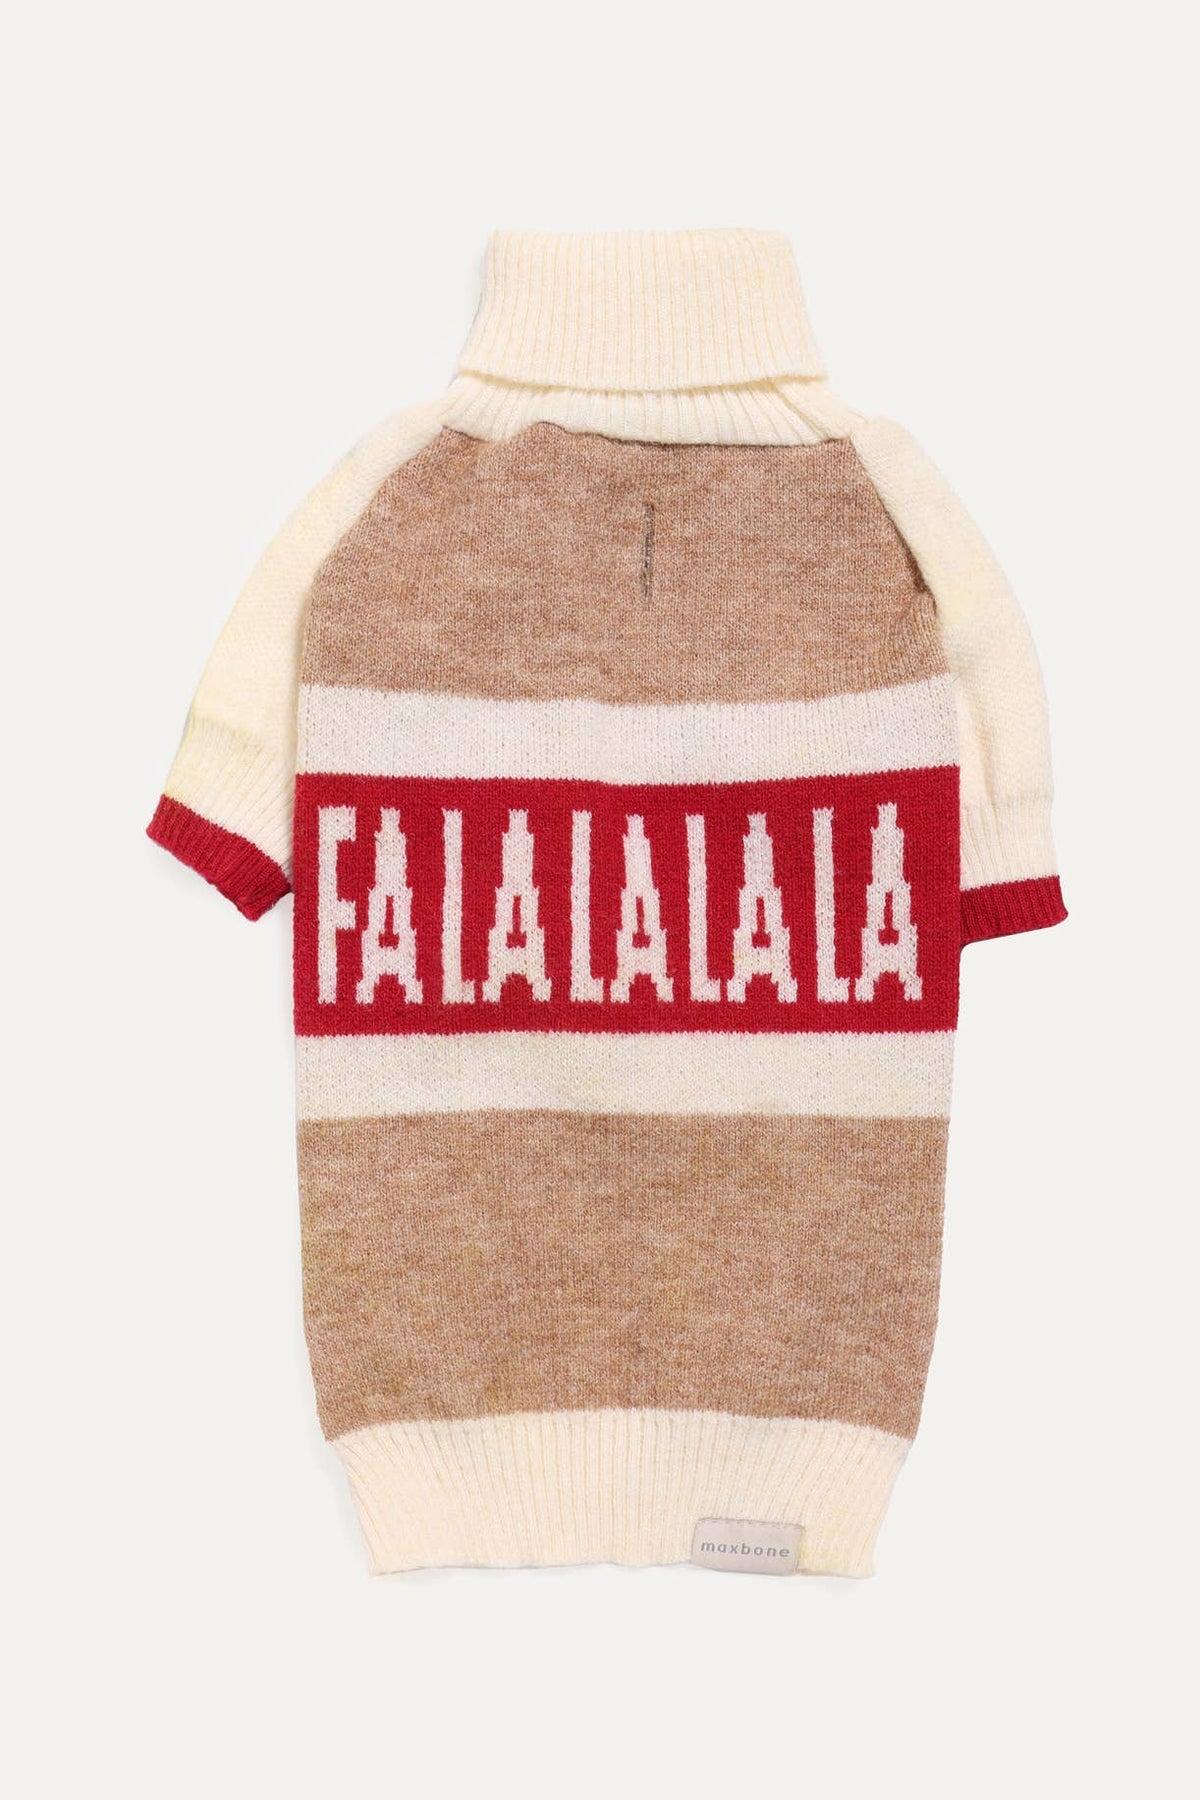 Fa La La La La Sweater